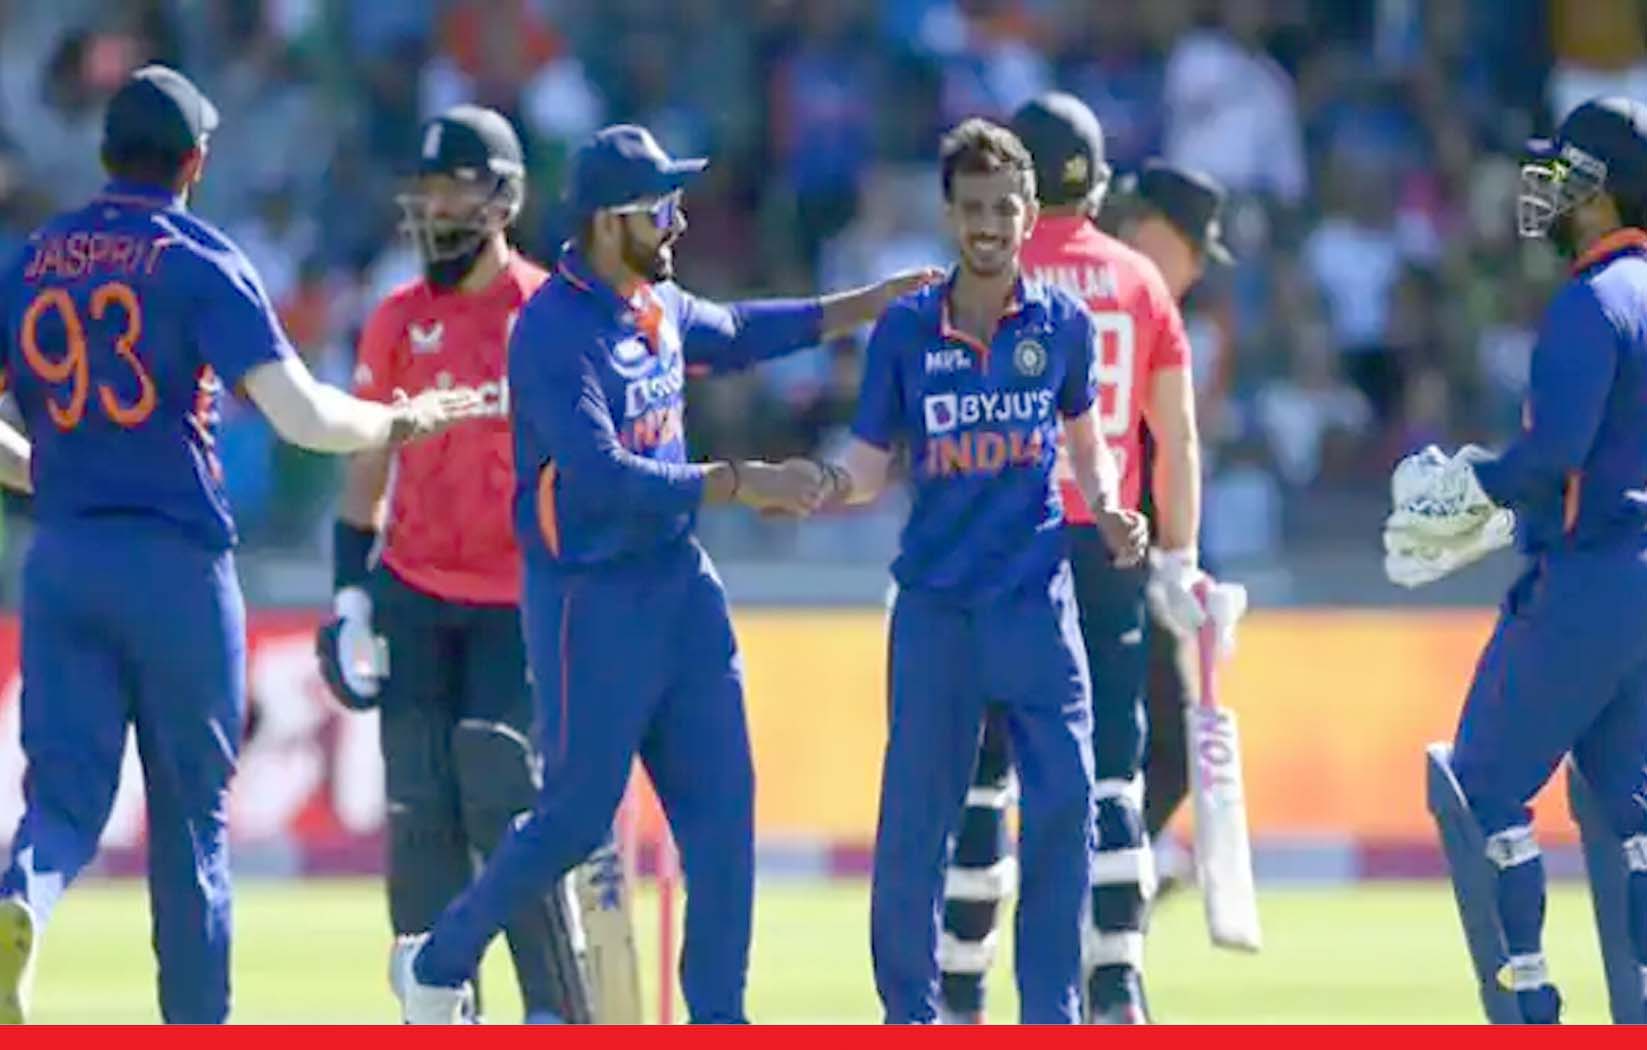 भारत ने इंग्लैंड के खिलाफ जीती लगातार चौथी टी20 सीरीज, दूसरे मैच में 49 रनों से दी मात